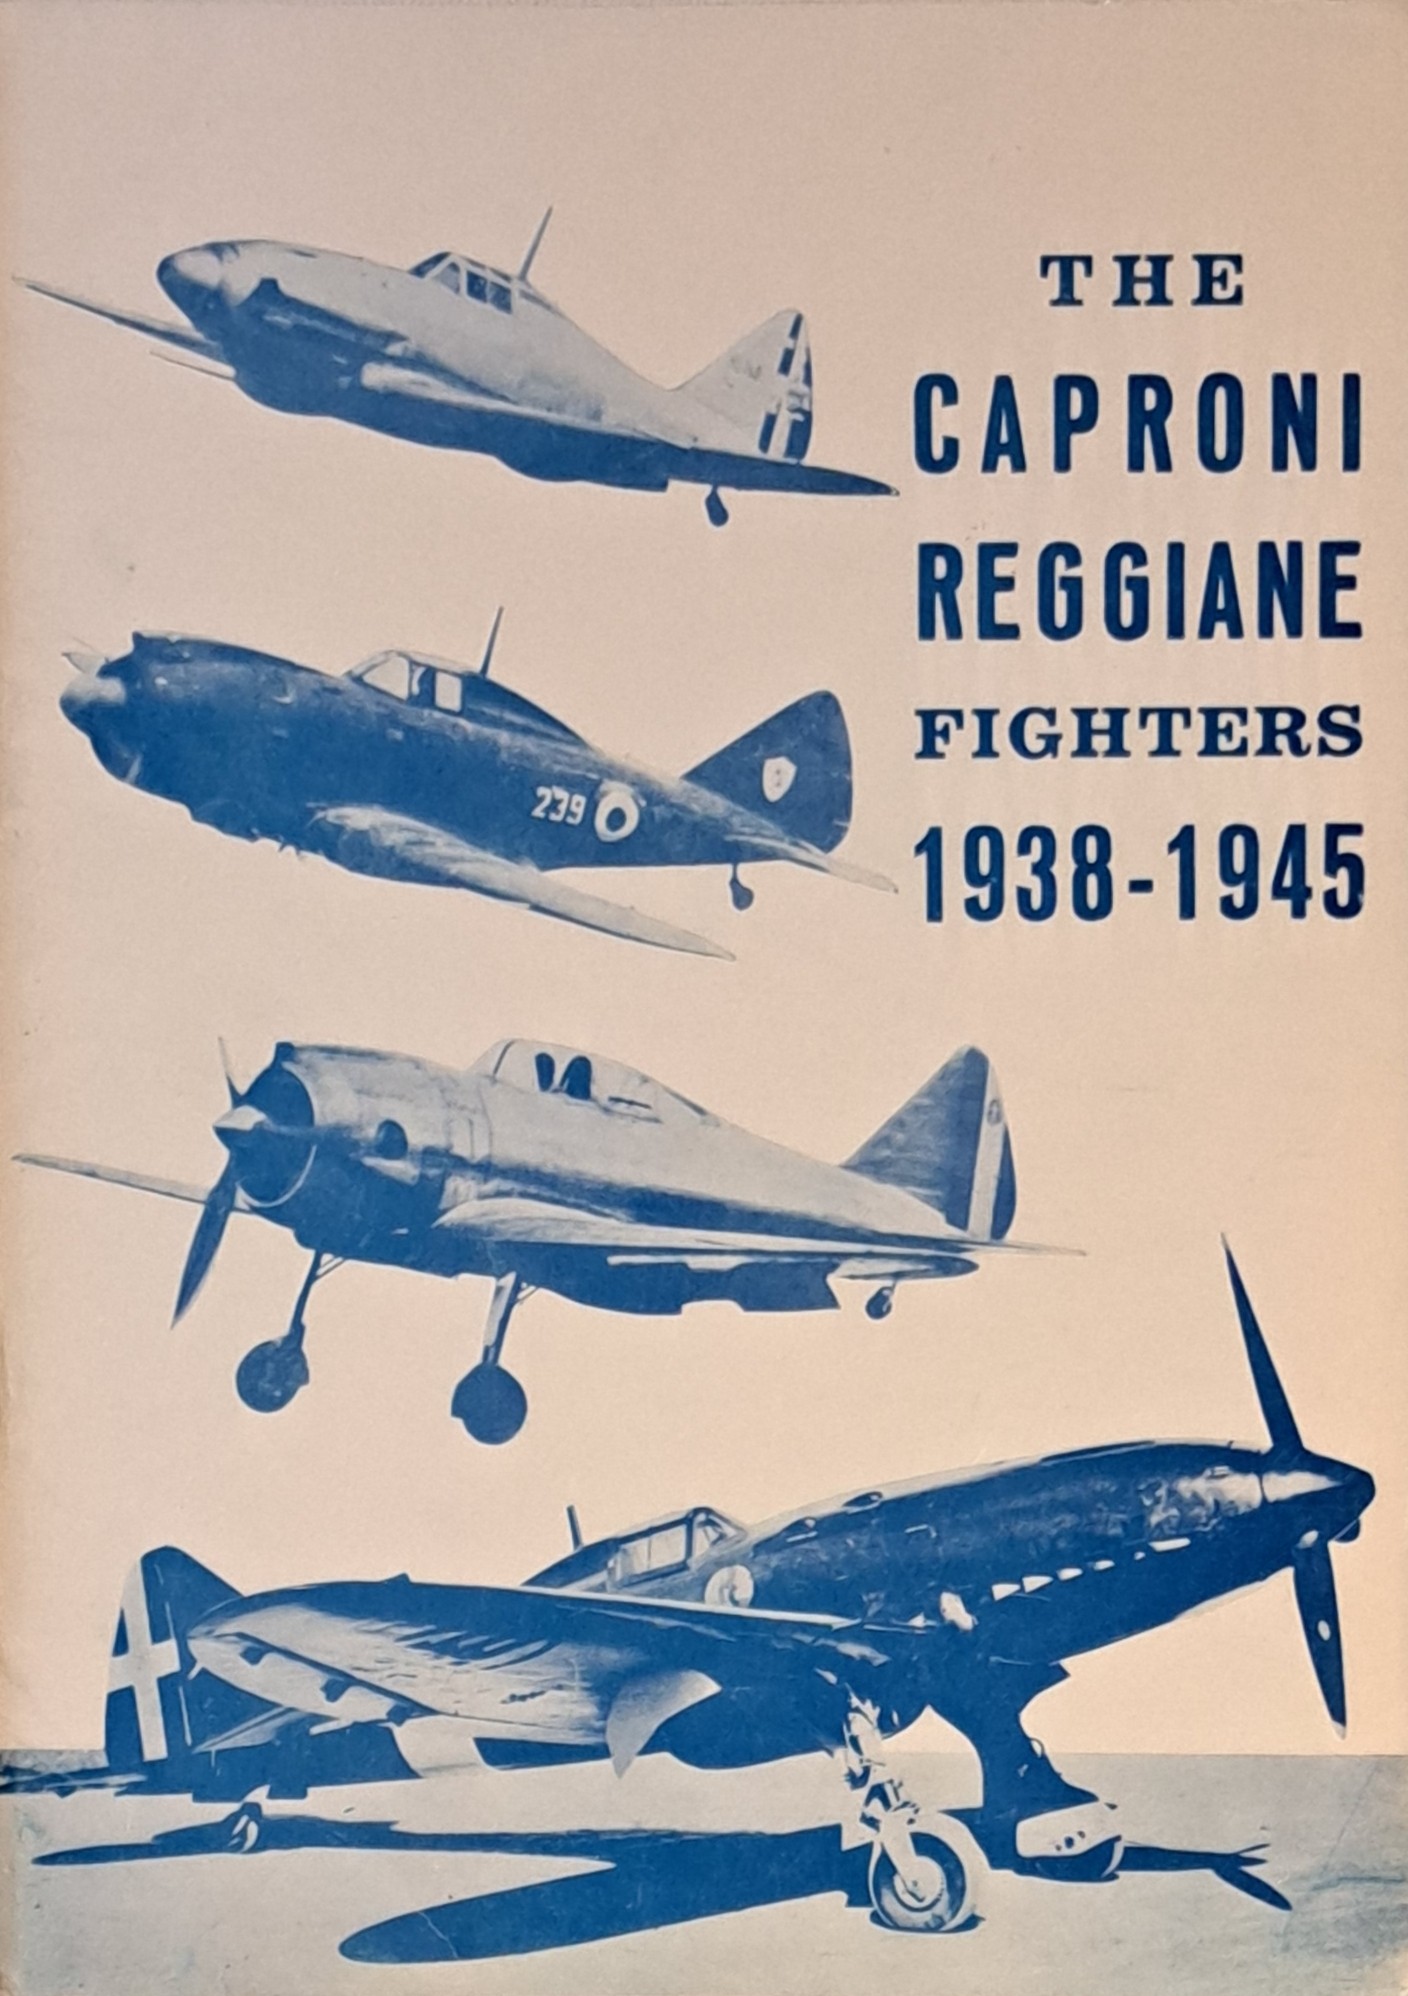 Caproni Reggiane fighters 1938-1945